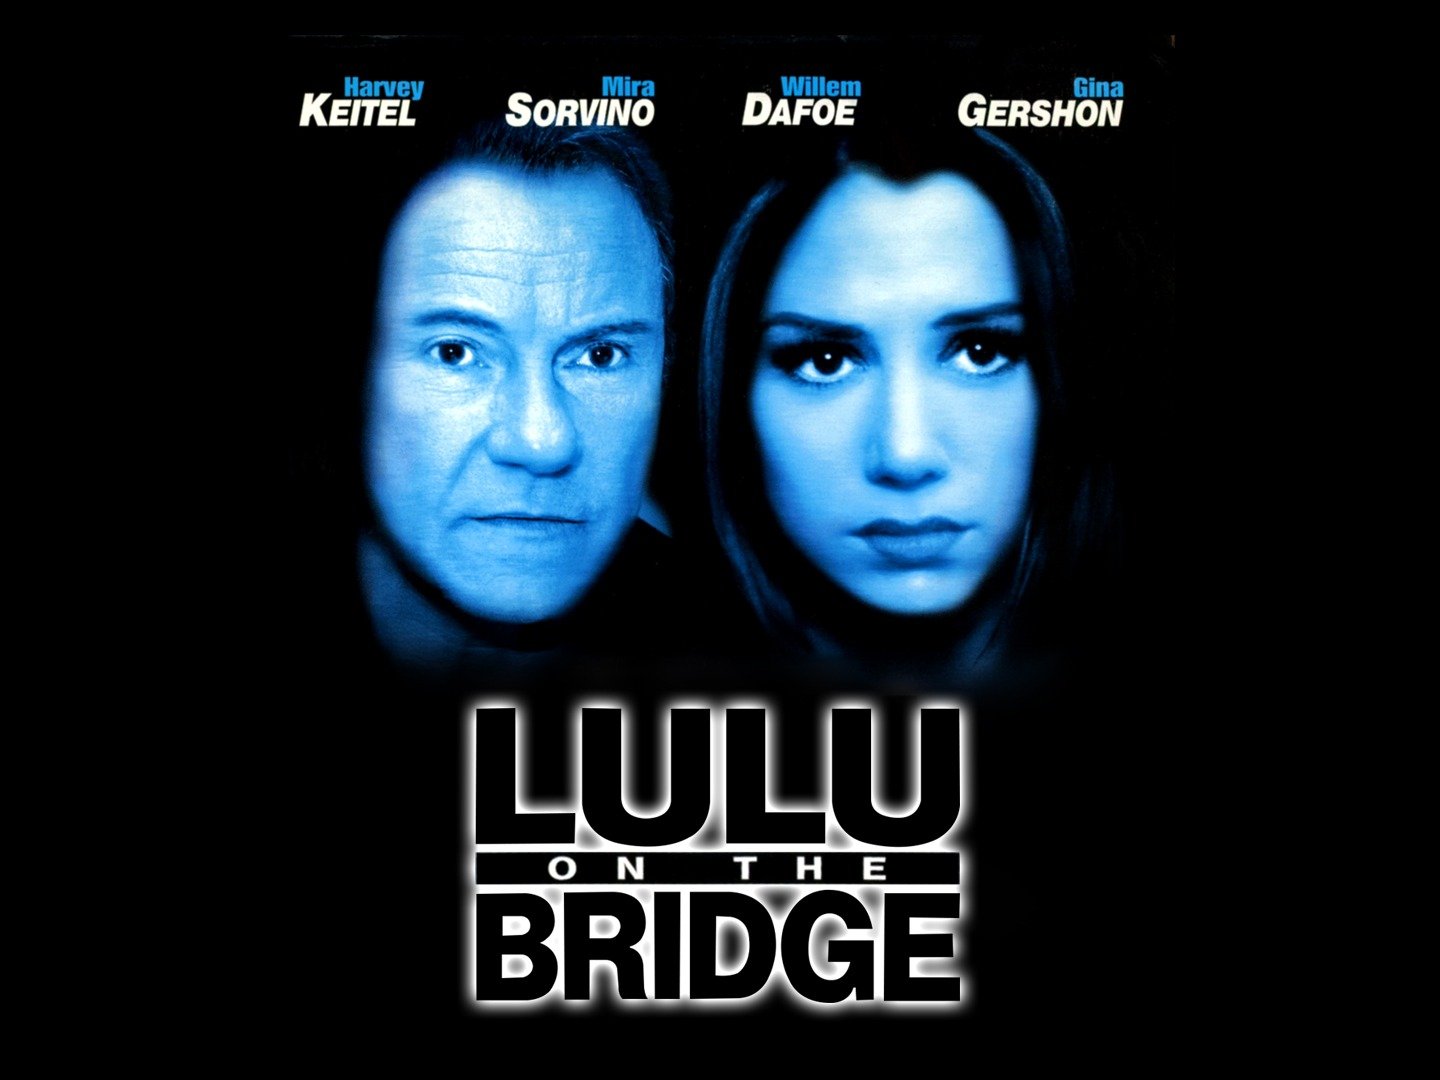 Lulu on the Bridge - Movie Reviews